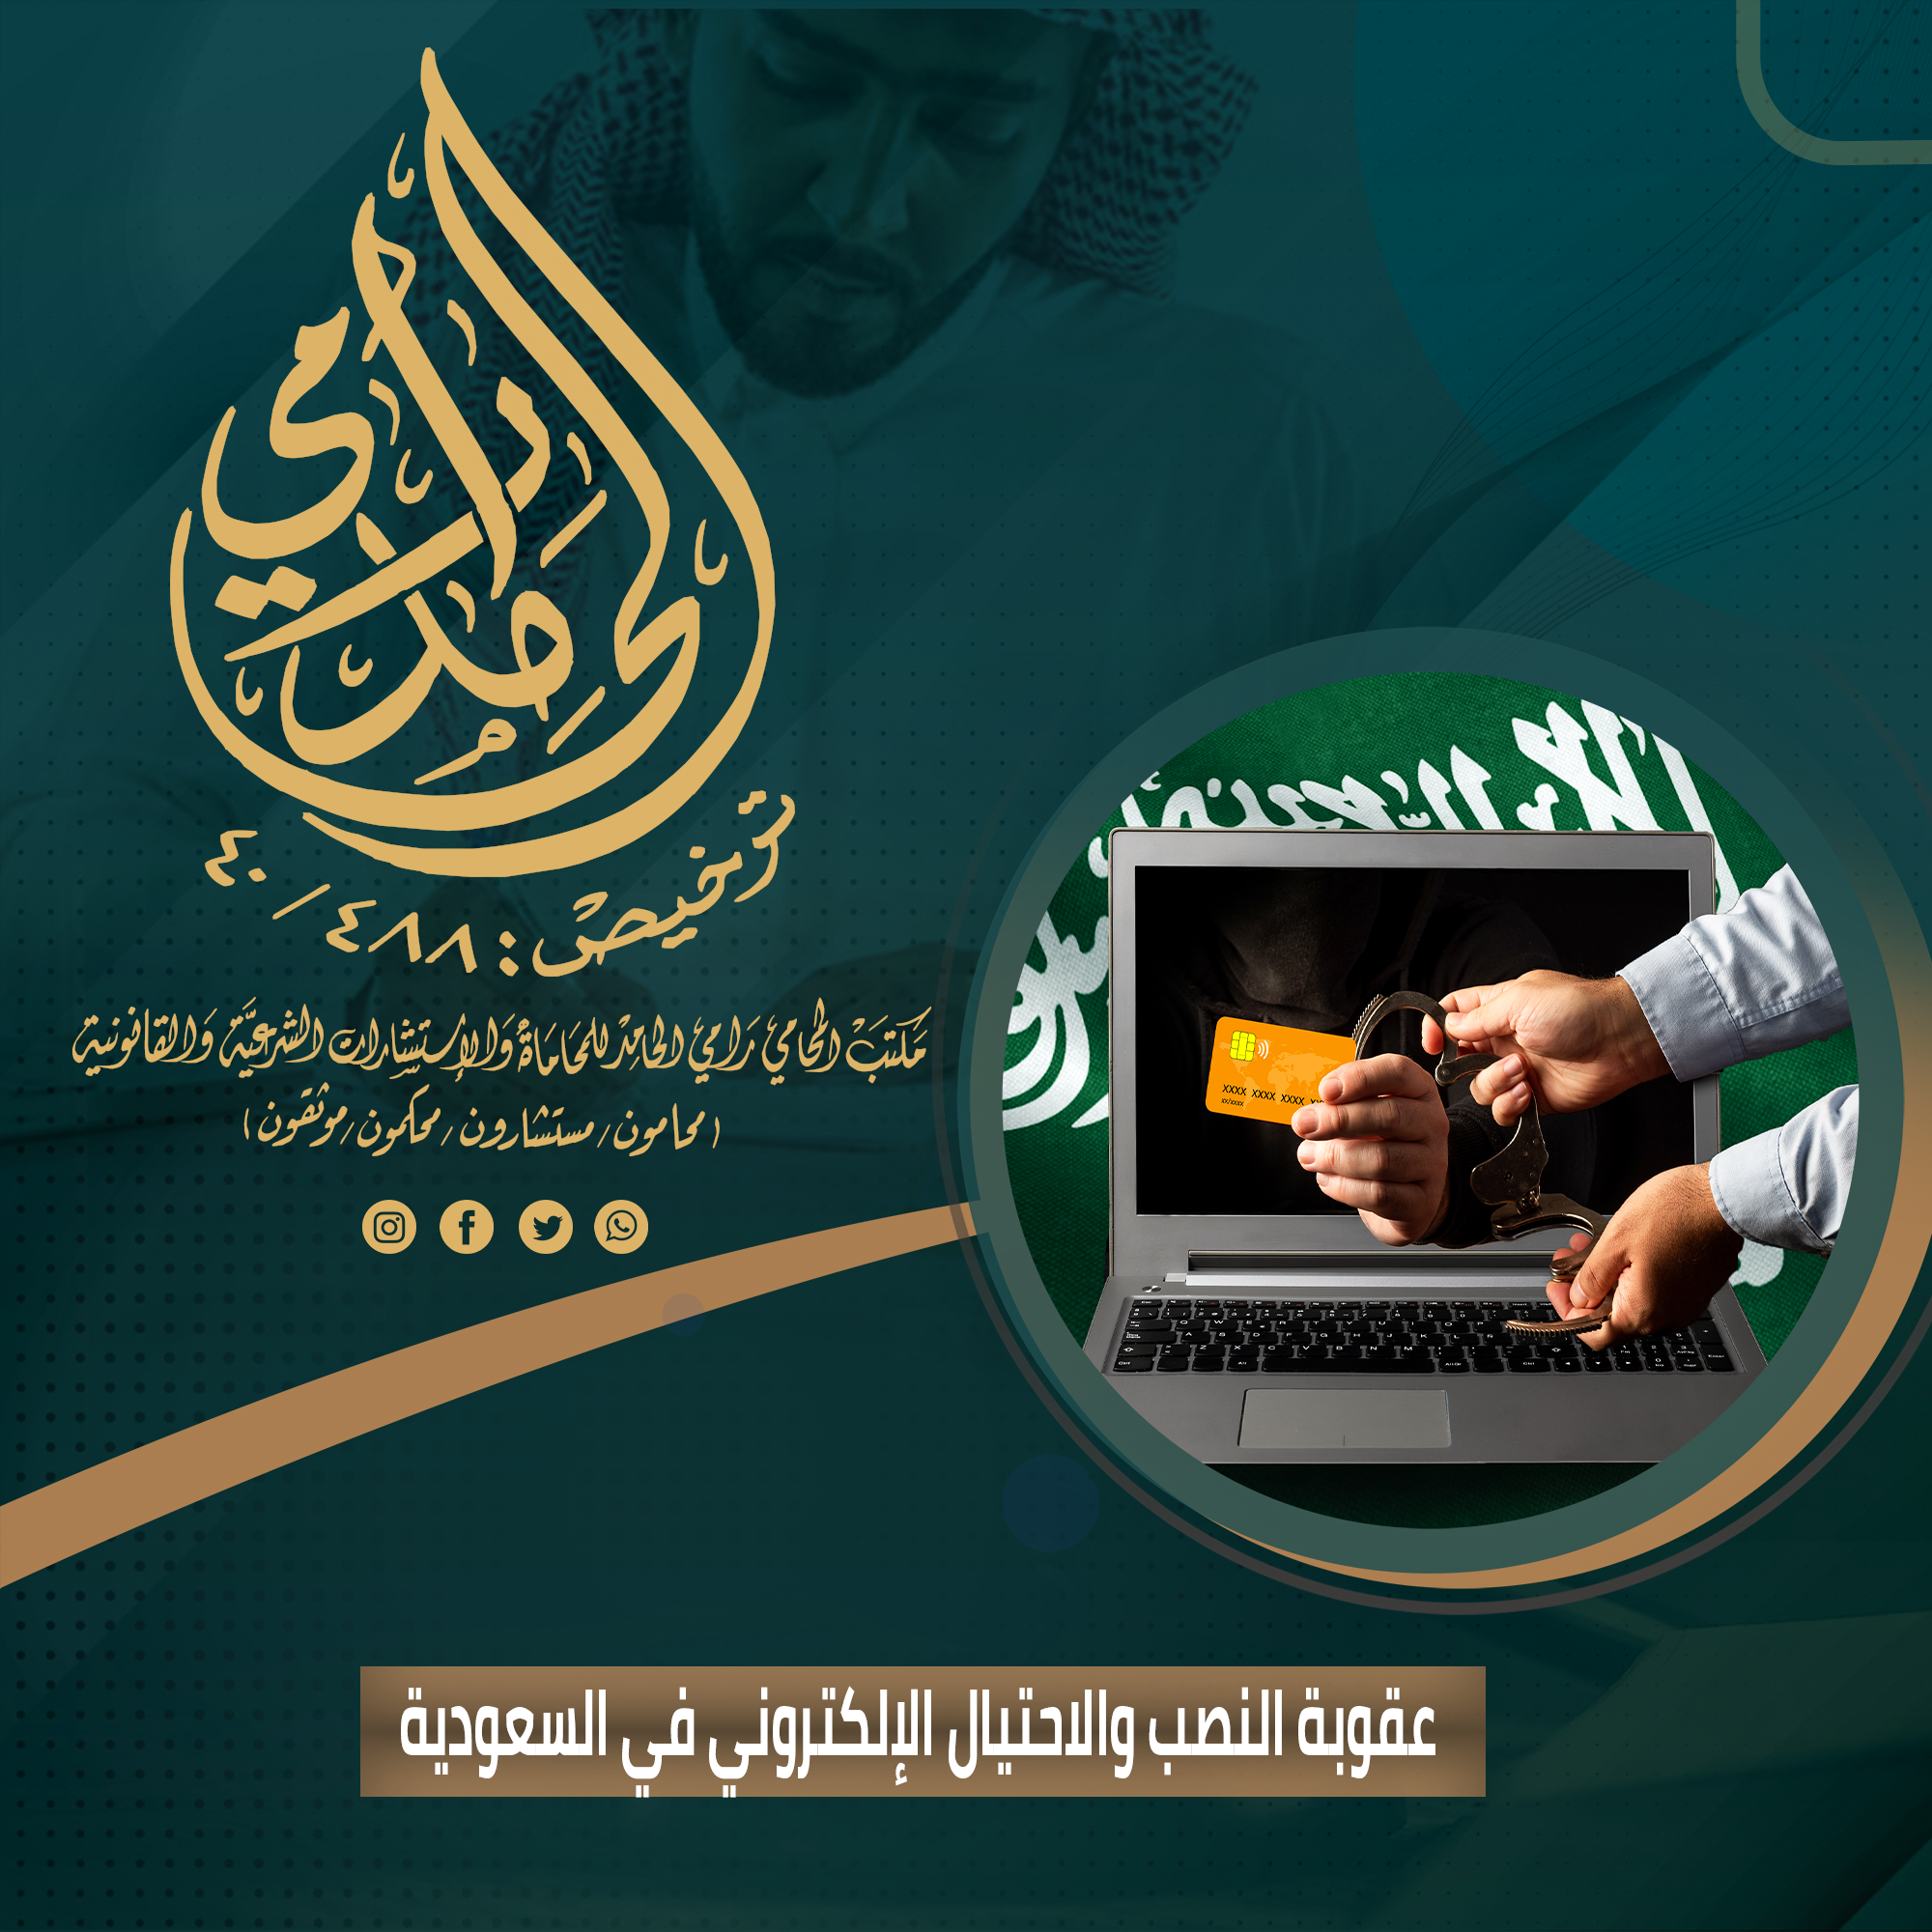 عقوبة النصب والاحتيال الإلكتروني في النظام السعودي